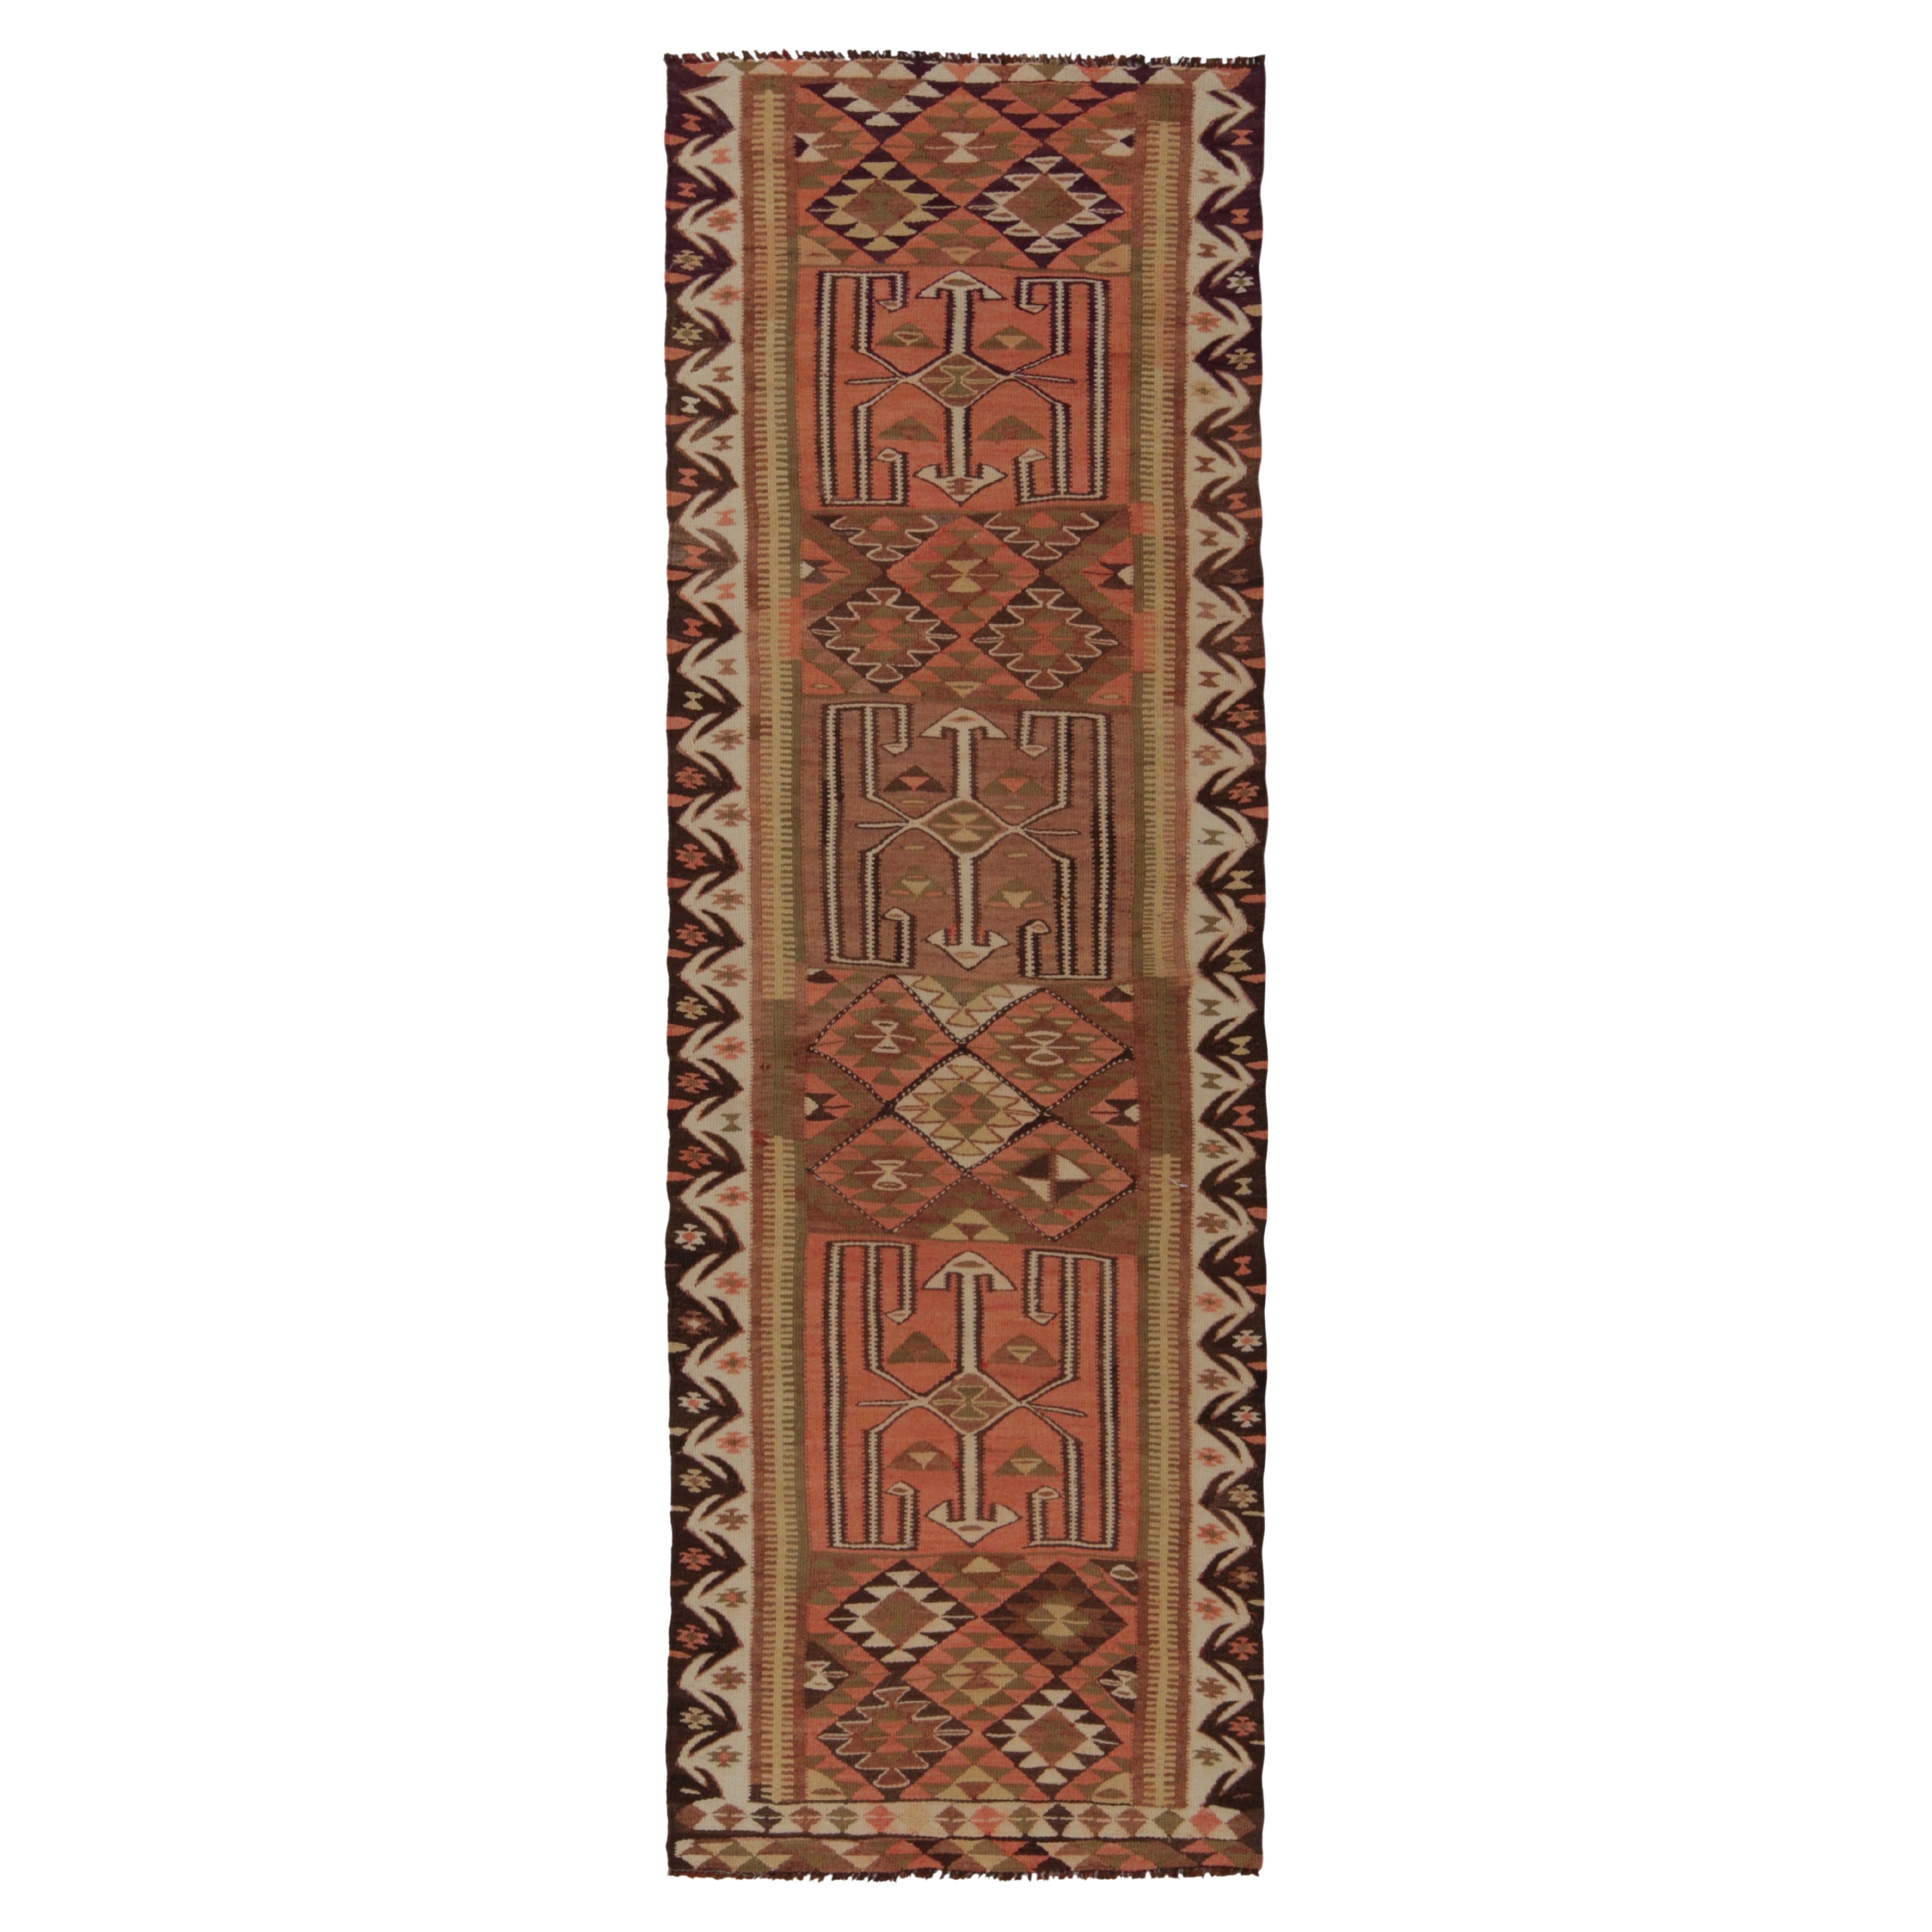 Tapis de couloir Kilim tribal vintage à motif géométrique beige-marron par Rug & Kilim